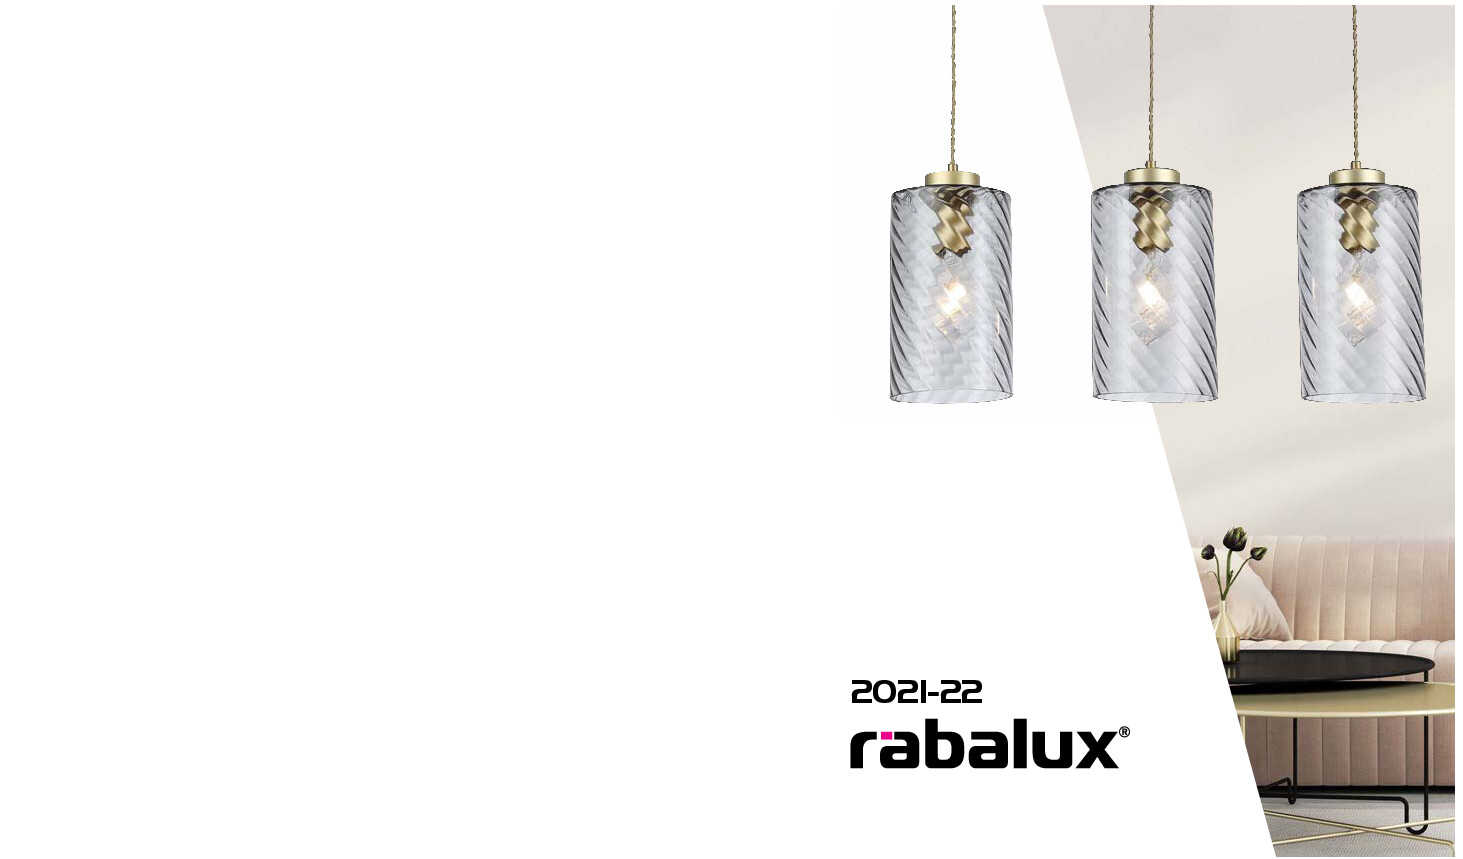 Katalog RABALUX - Lampy wewnętrzne i zewnętrzne 2021-22